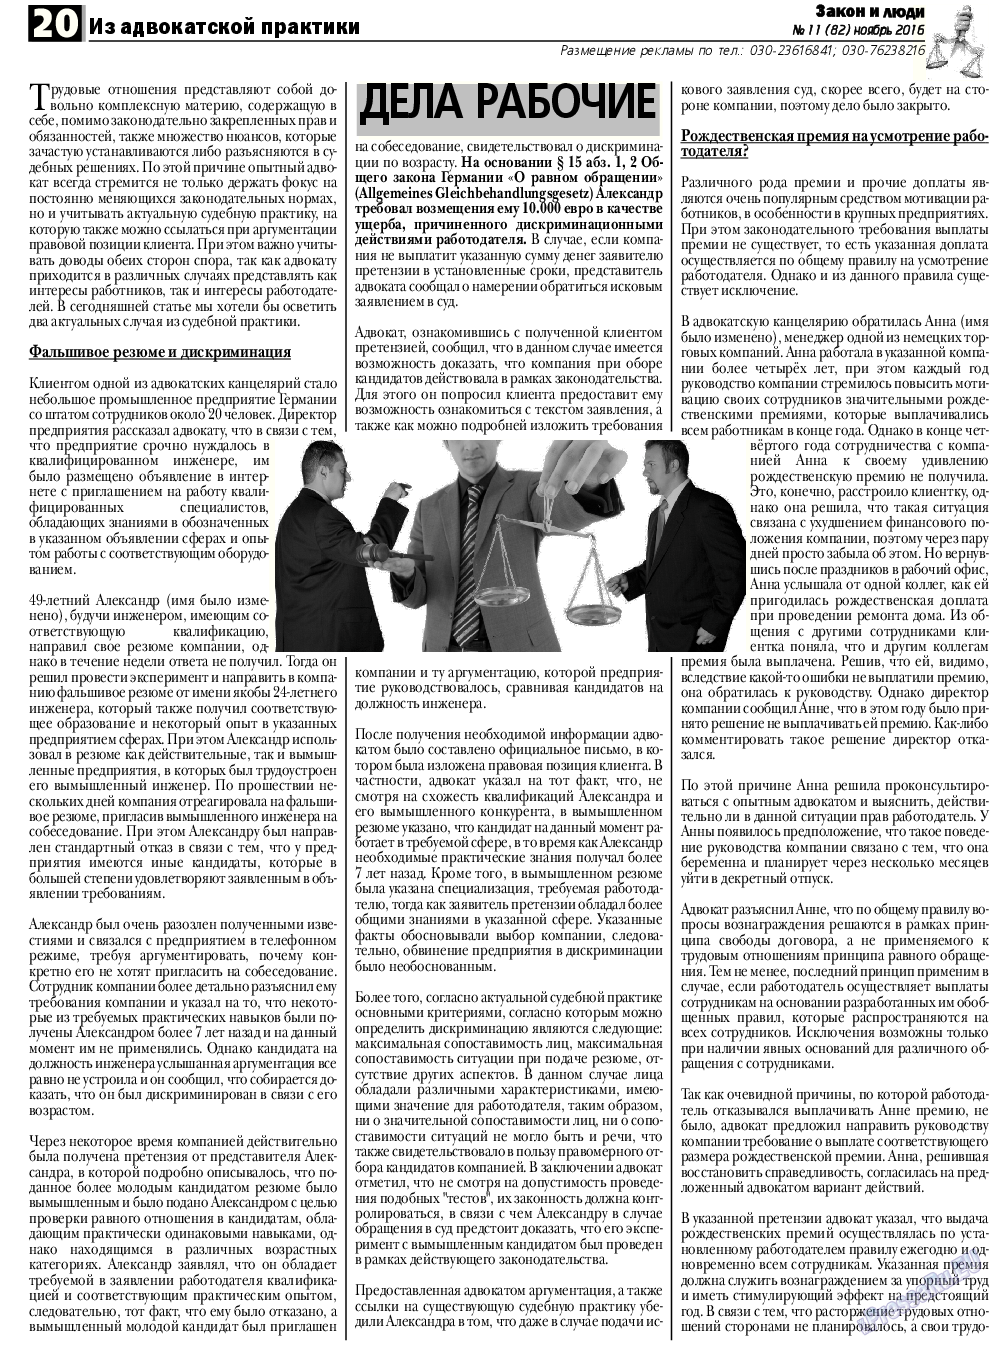 Закон и люди, газета. 2016 №11 стр.20